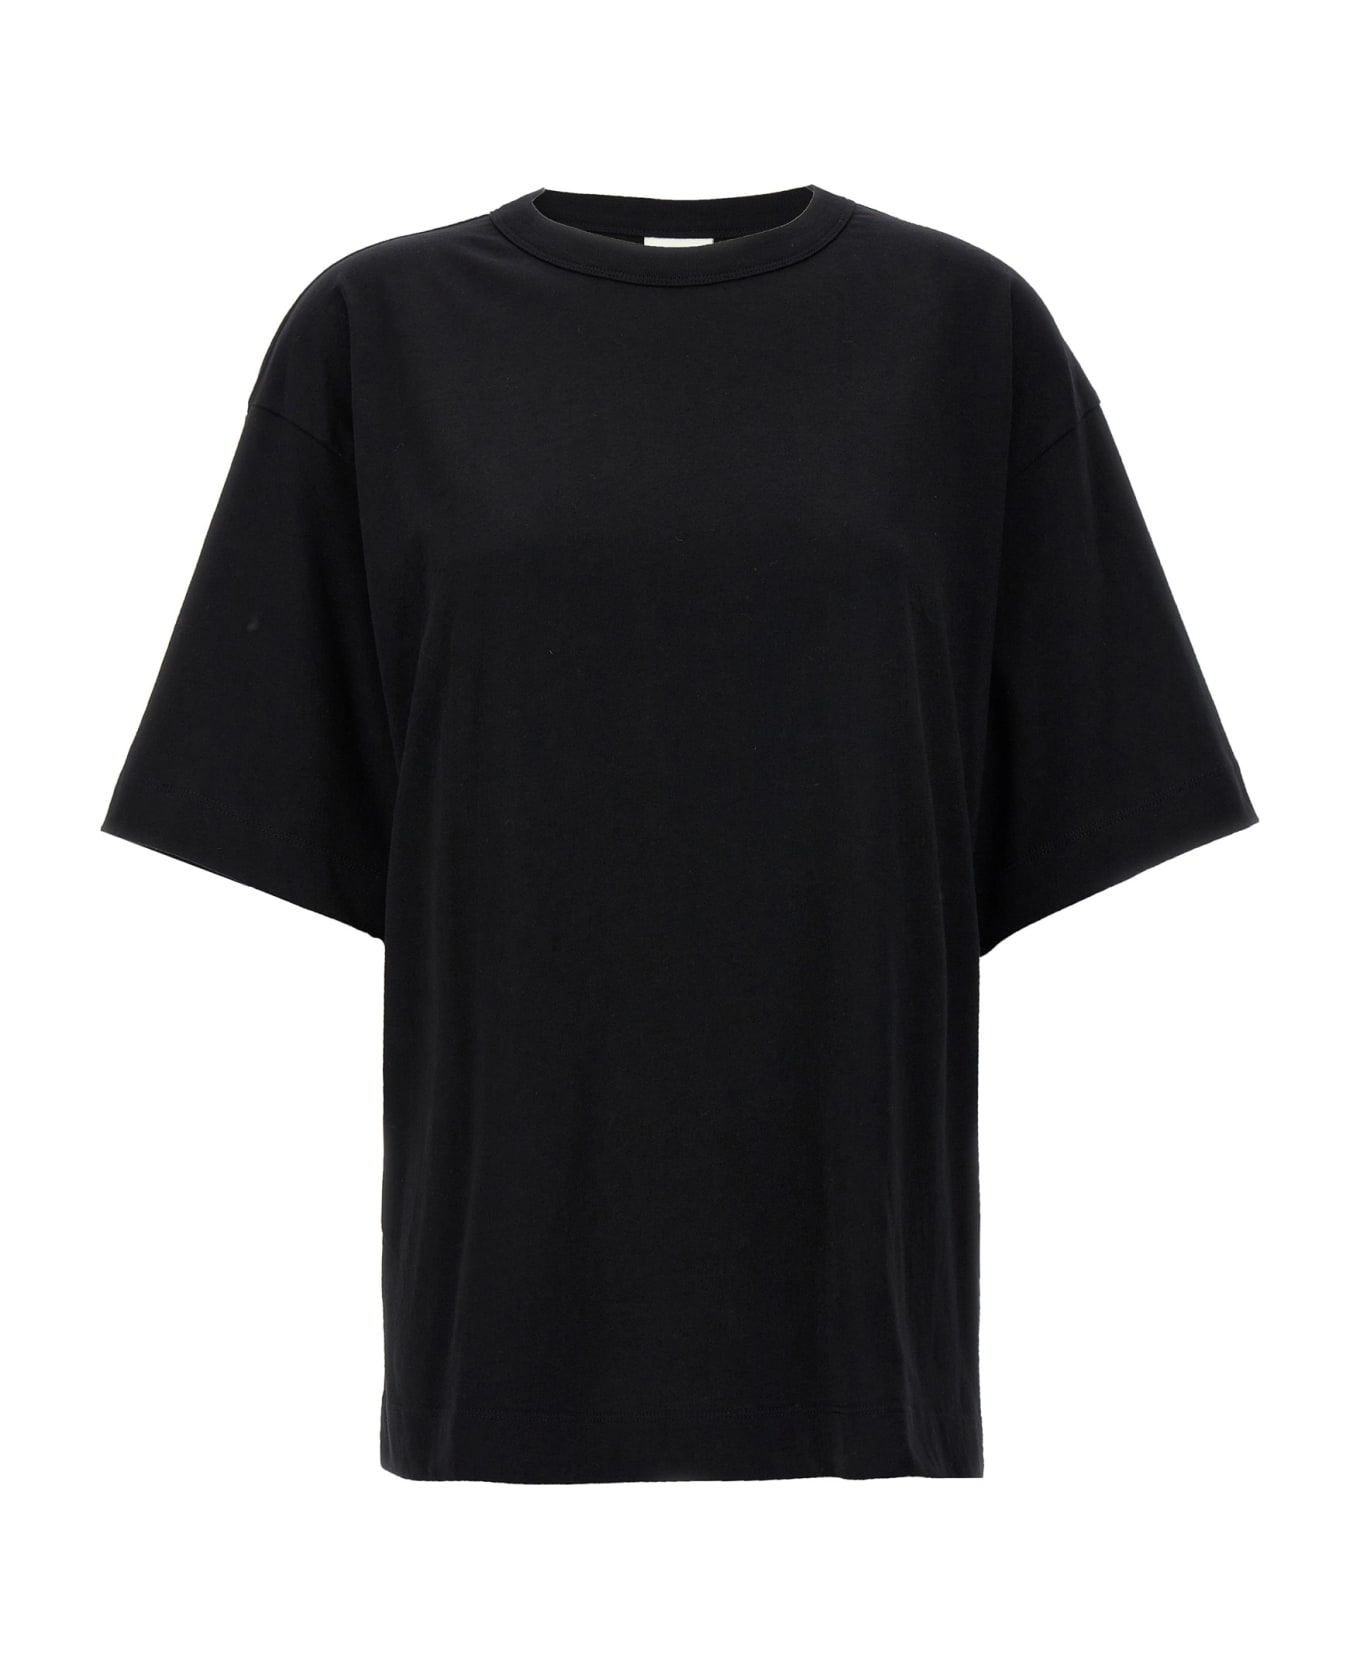 Dries Van Noten 'hegels' T-shirt - Black   Tシャツ